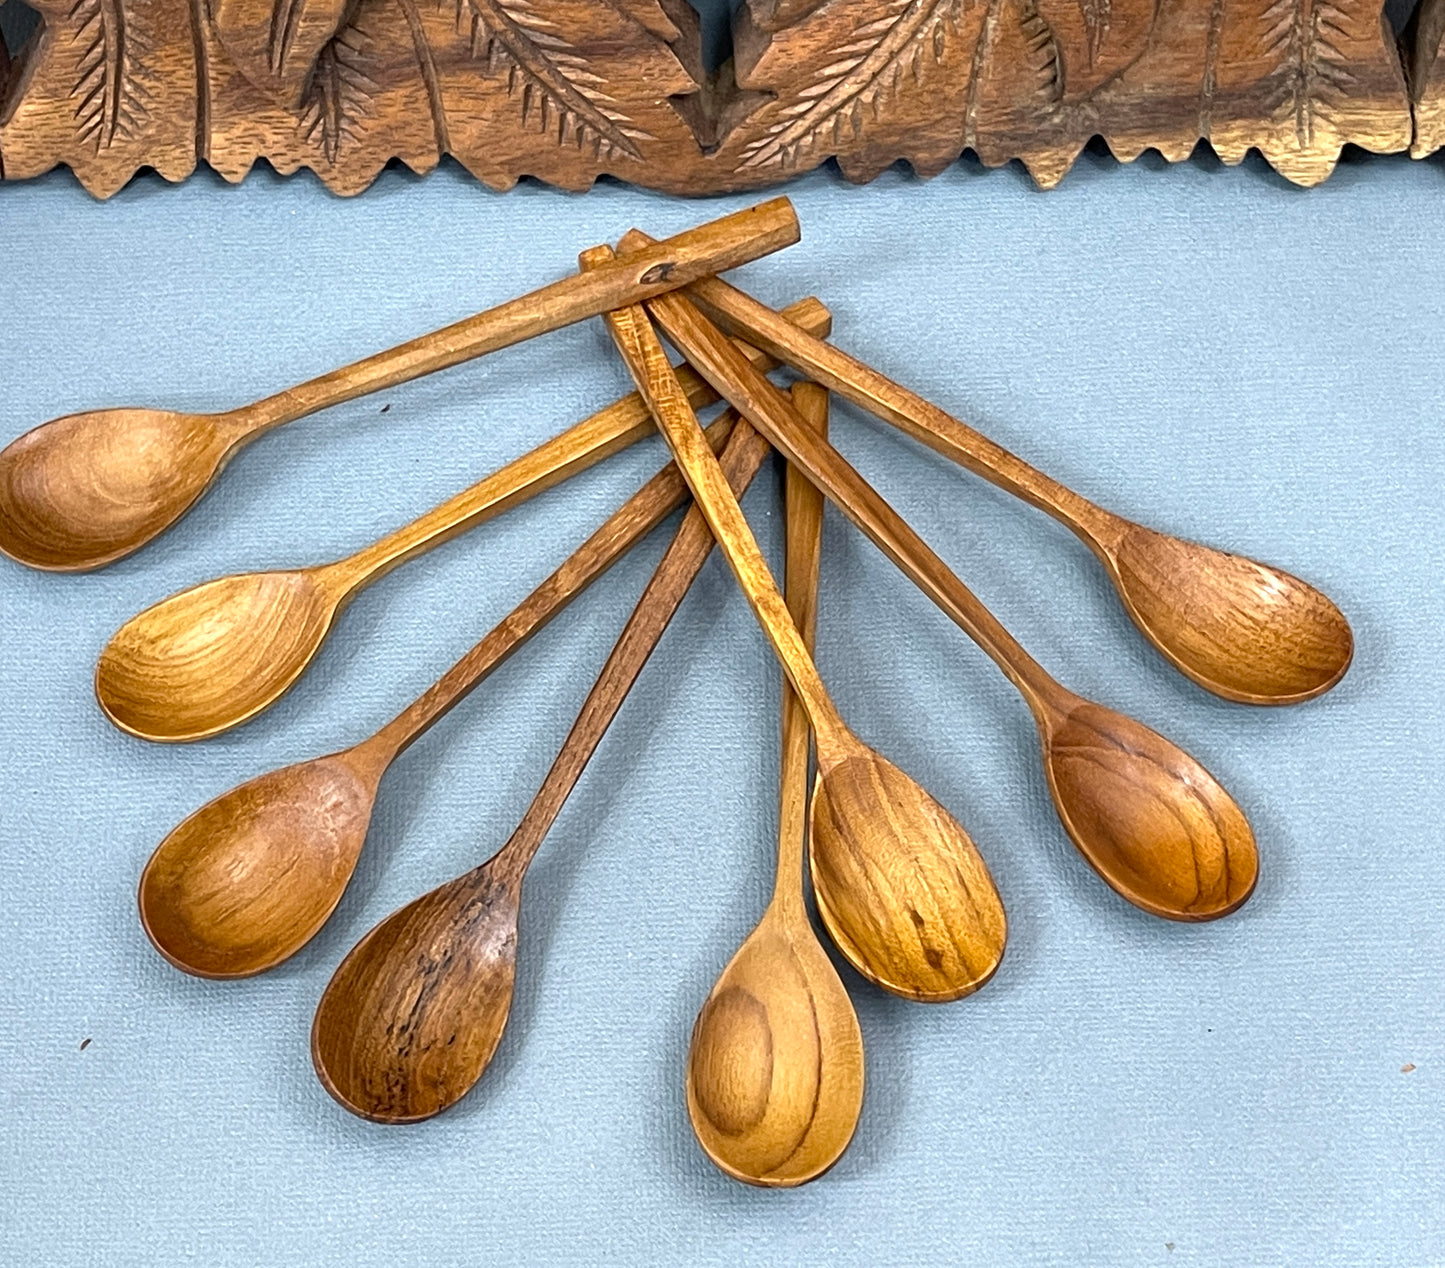 Teak Wood Serving Spoons